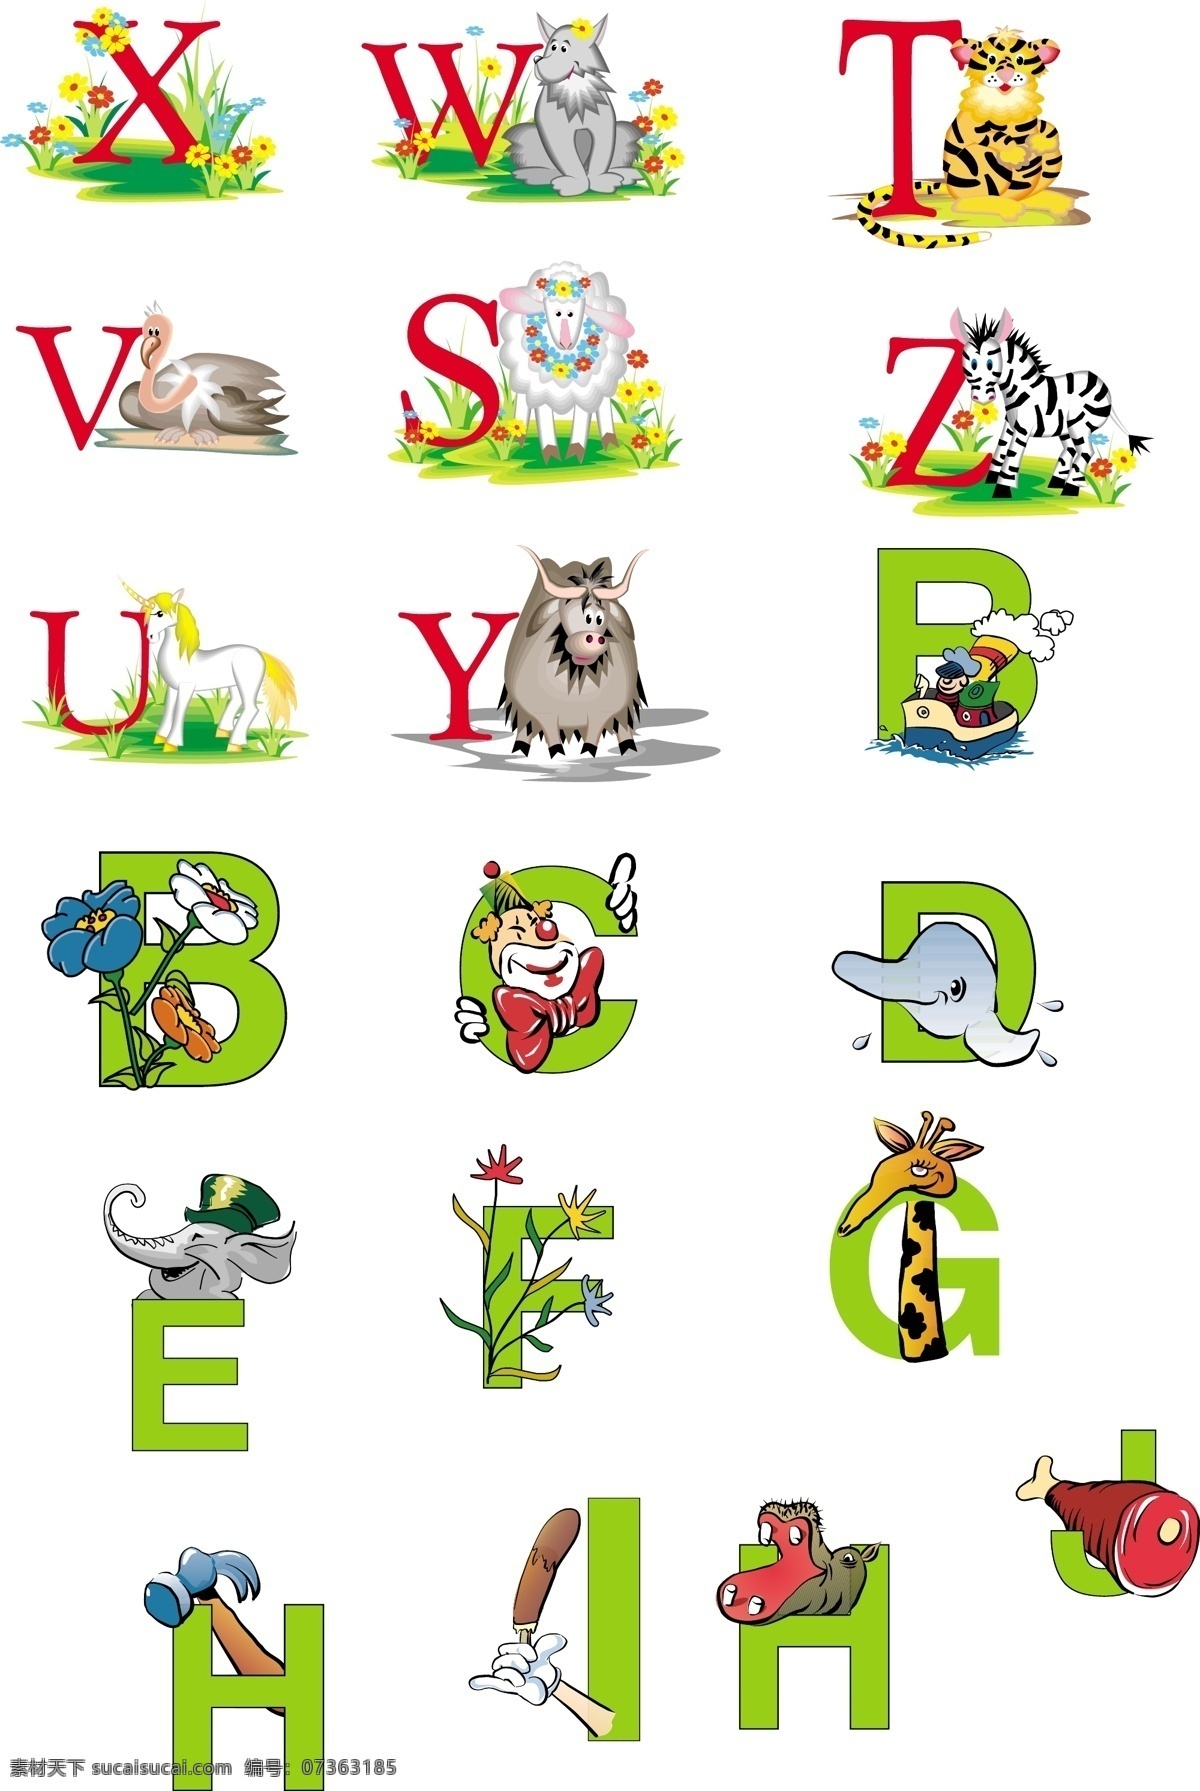 动物 动物字母 卡通 矢量图 素材模板下载 字母 自然景观 素材矢量素材 x y z 矢量